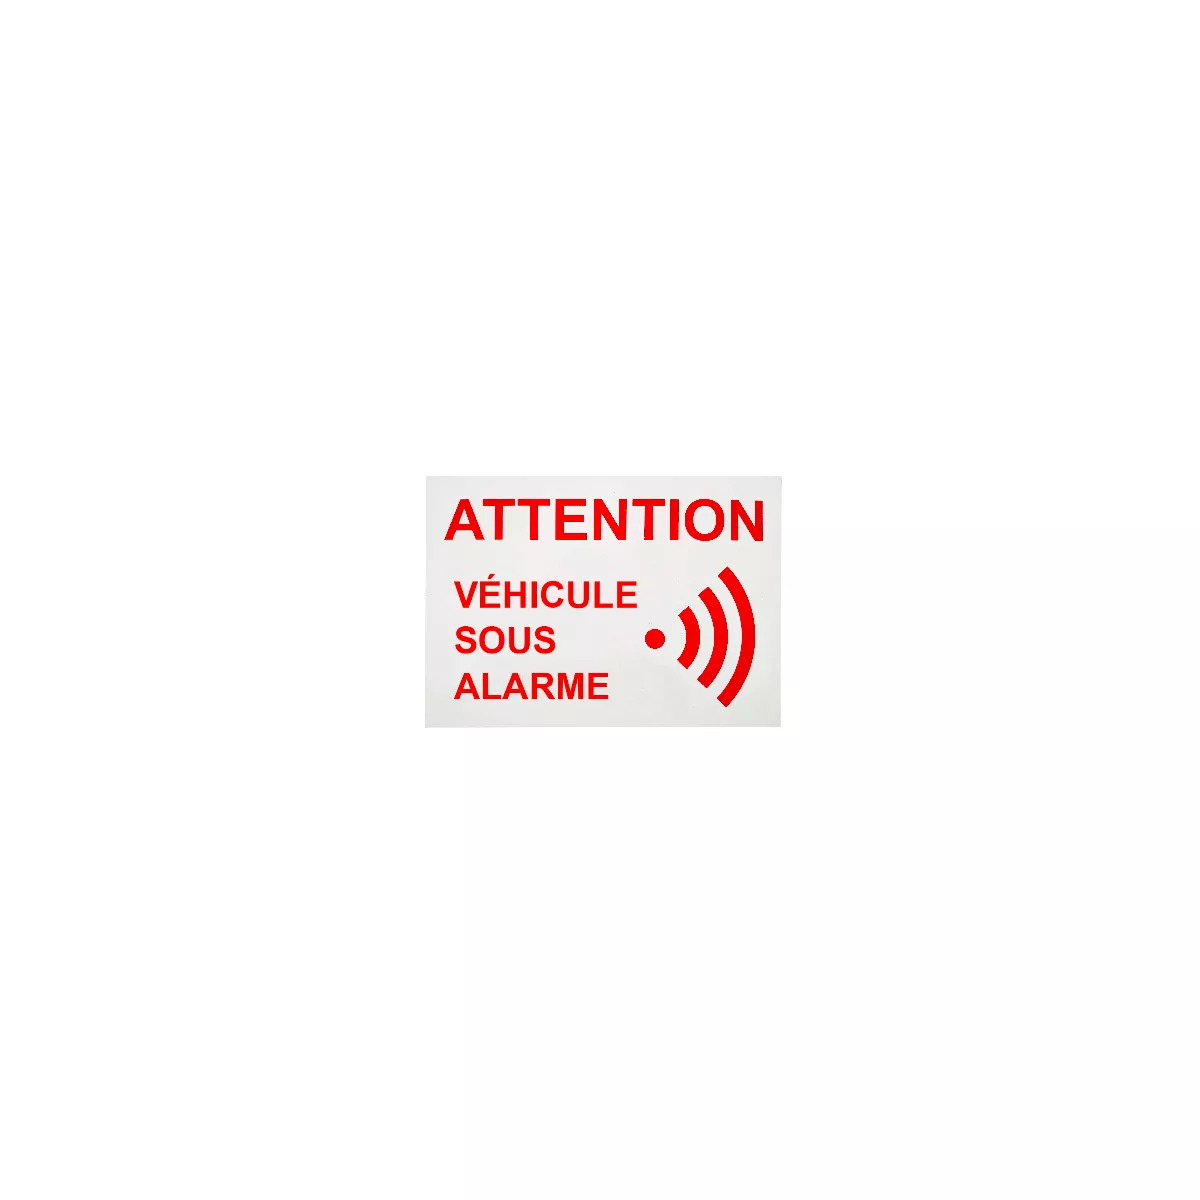 Sticker Numéro pour votre voiture VIDE intérieur